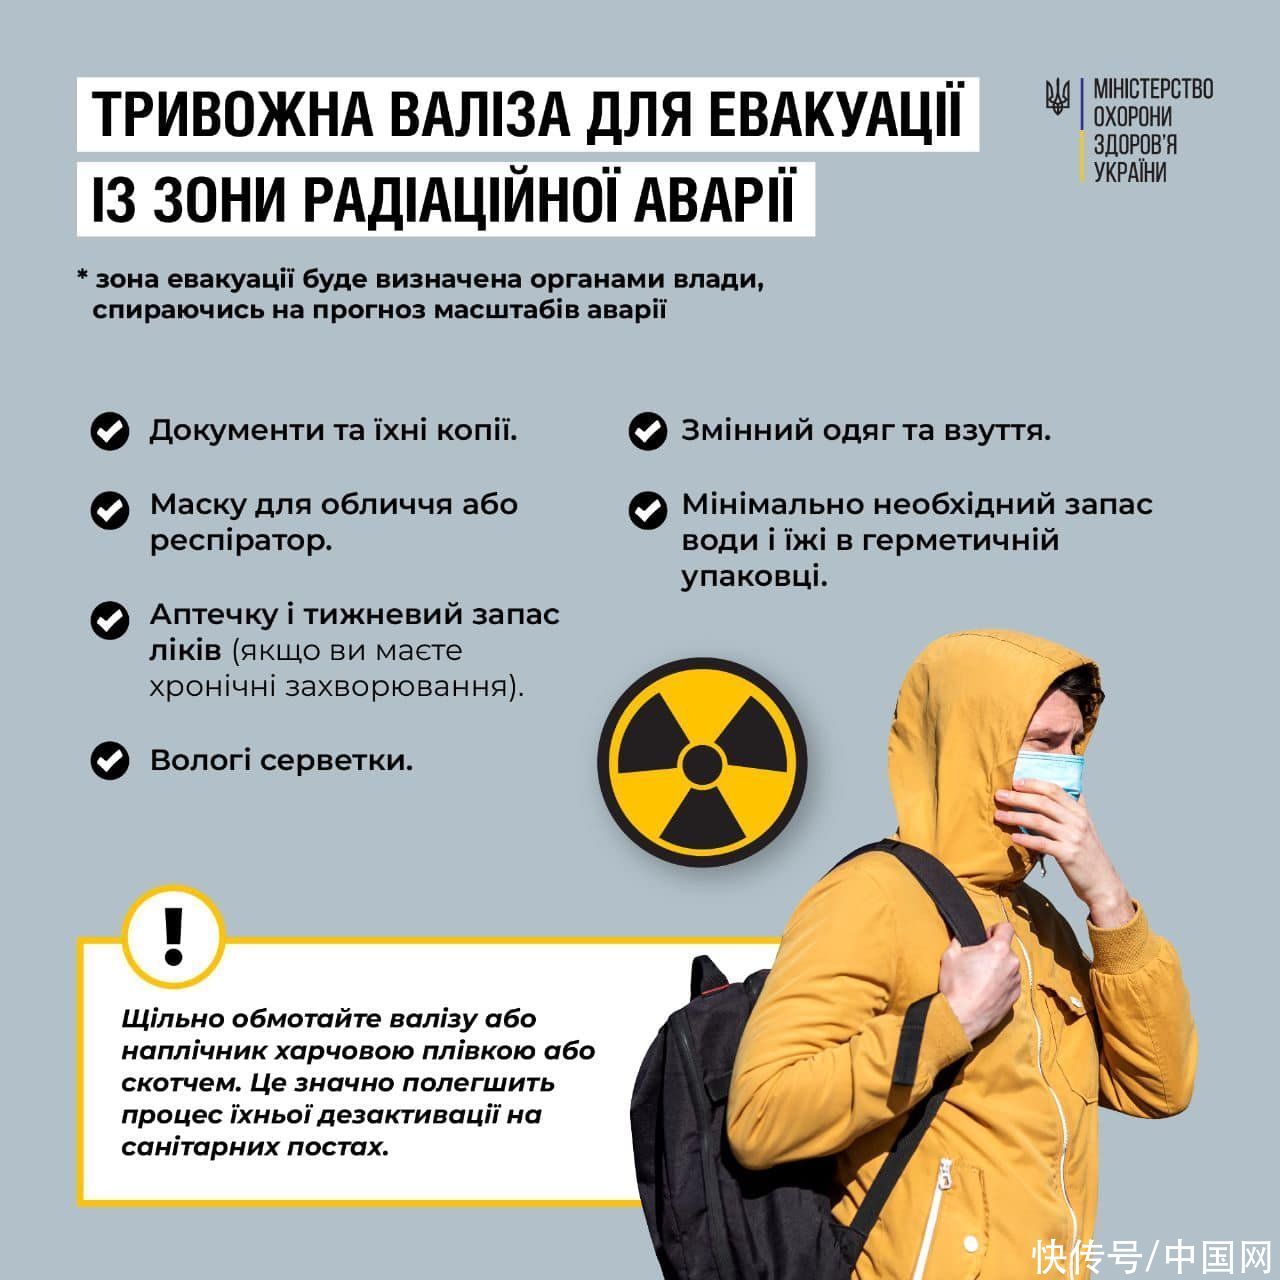 乌克兰卫生部发布核事故应对指南 中使馆提醒